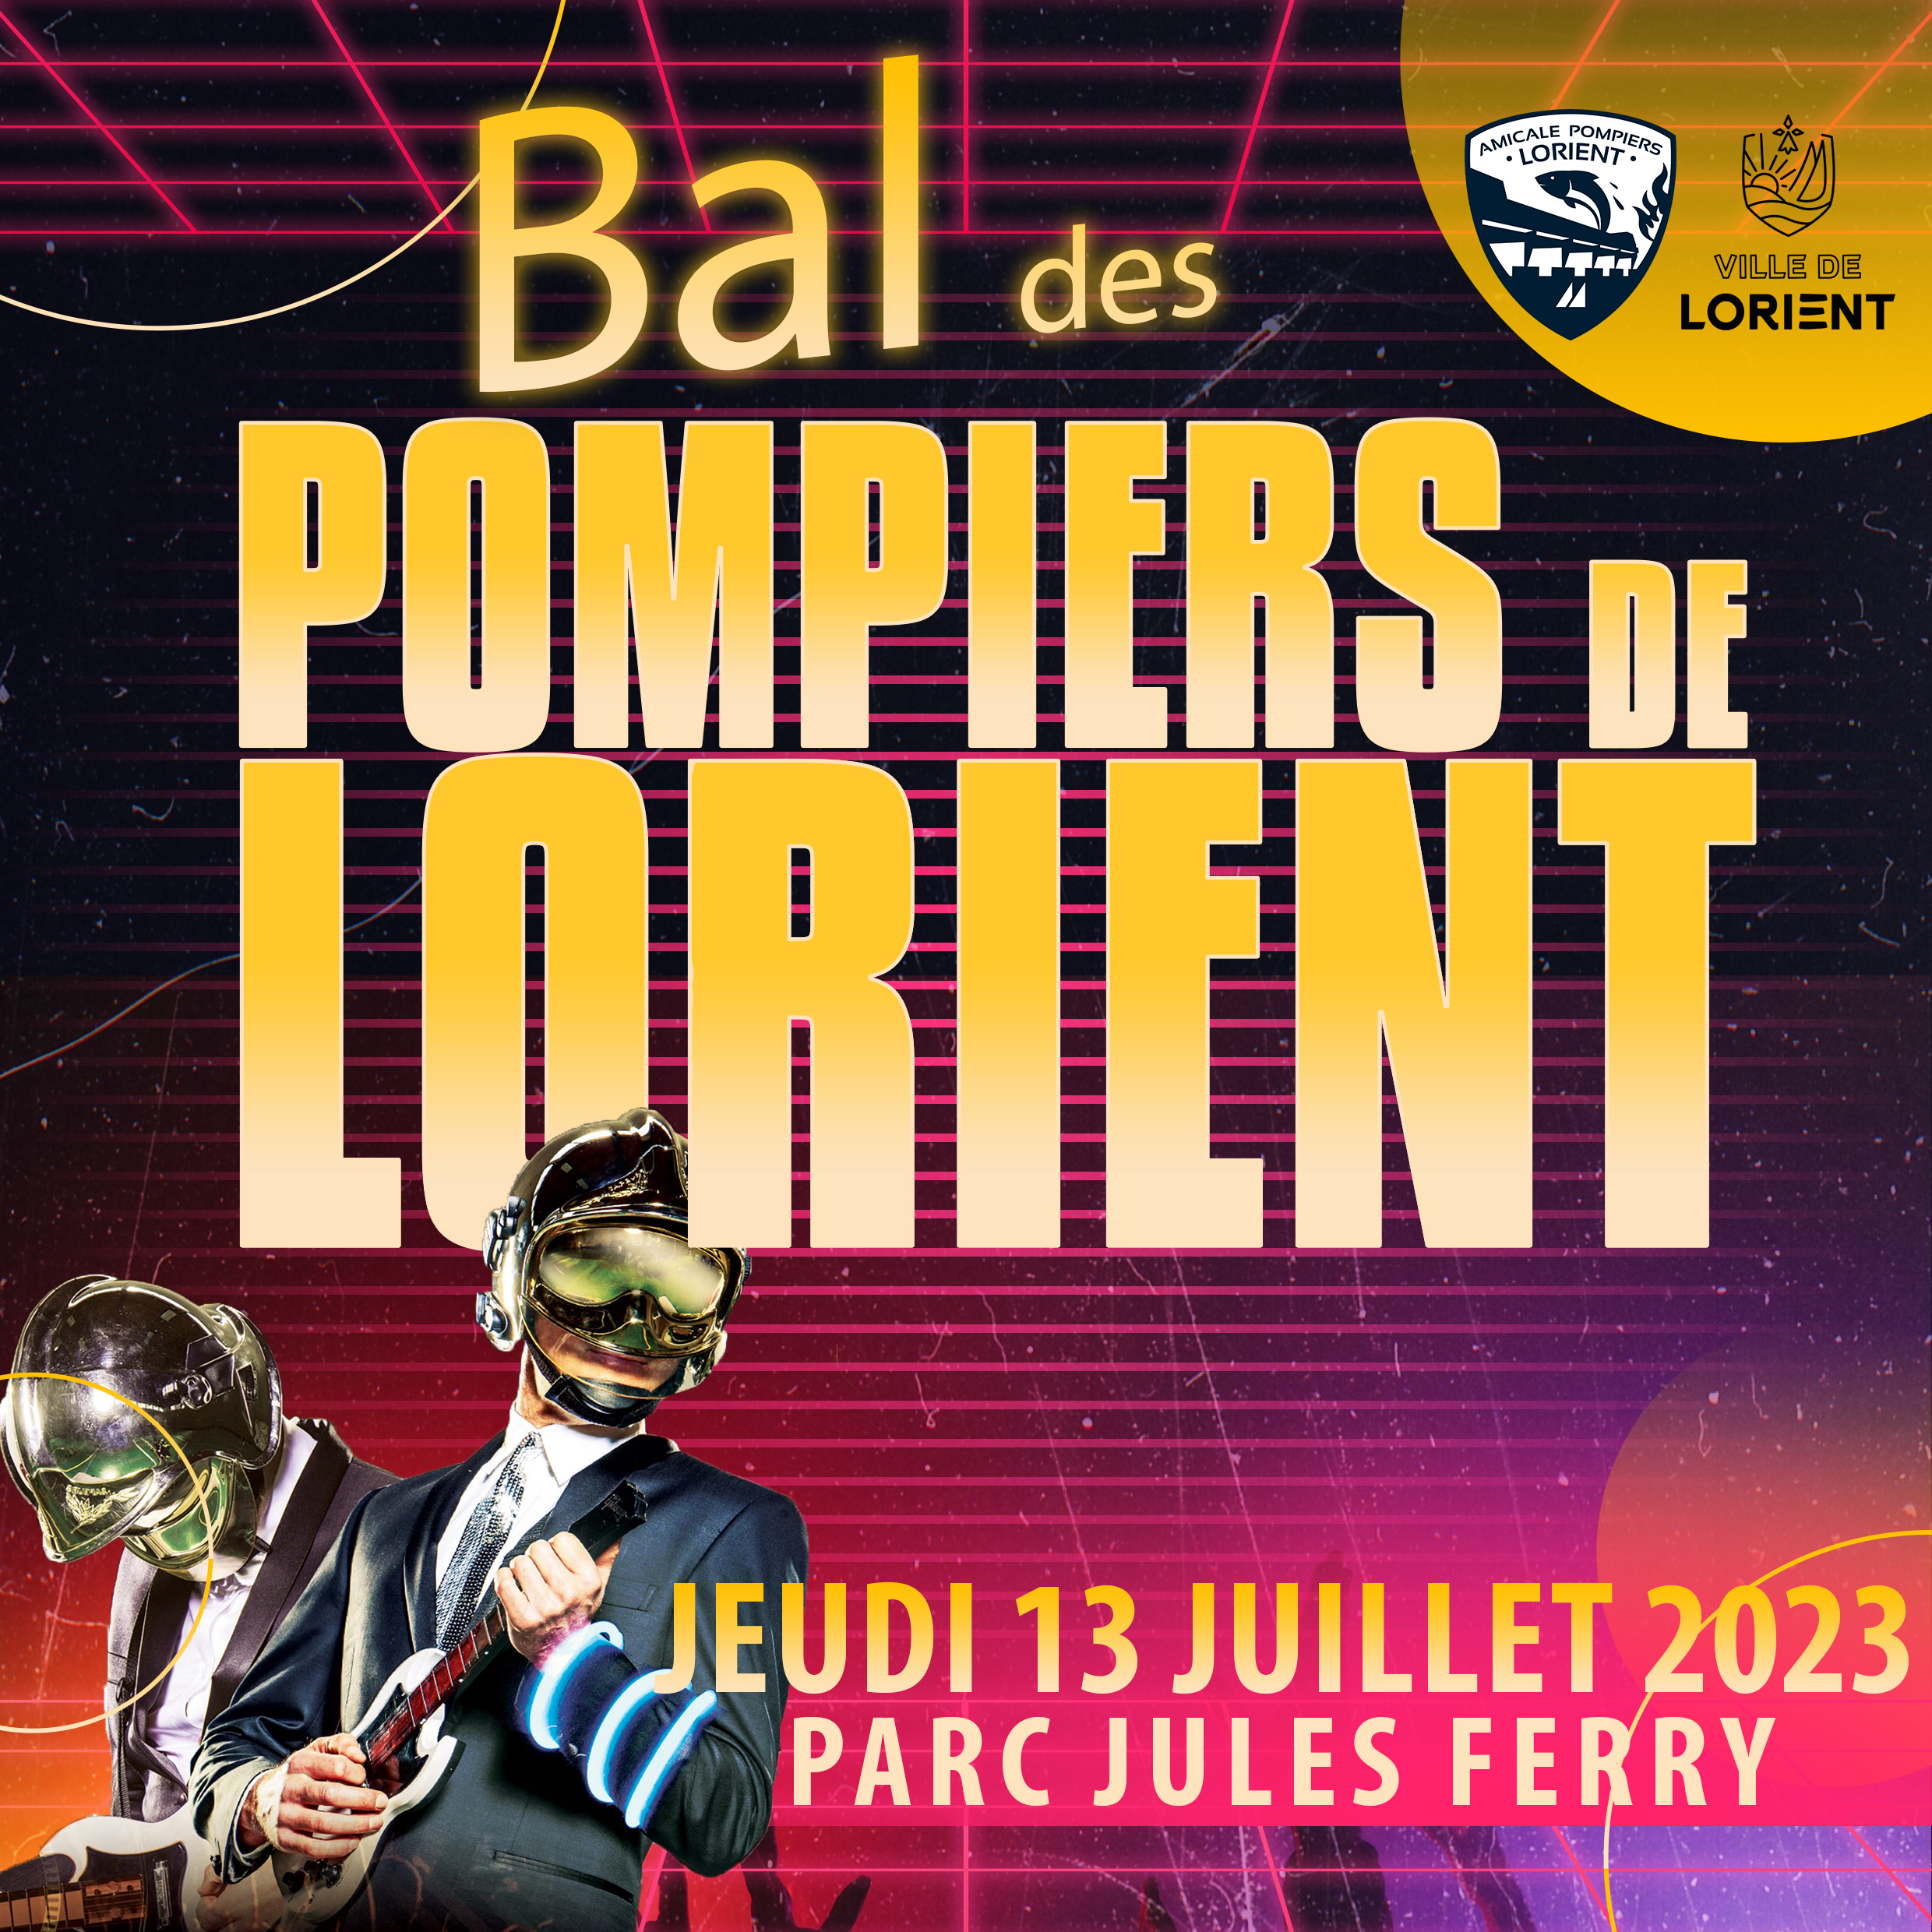 Bal des pompiers de Lorient 2023